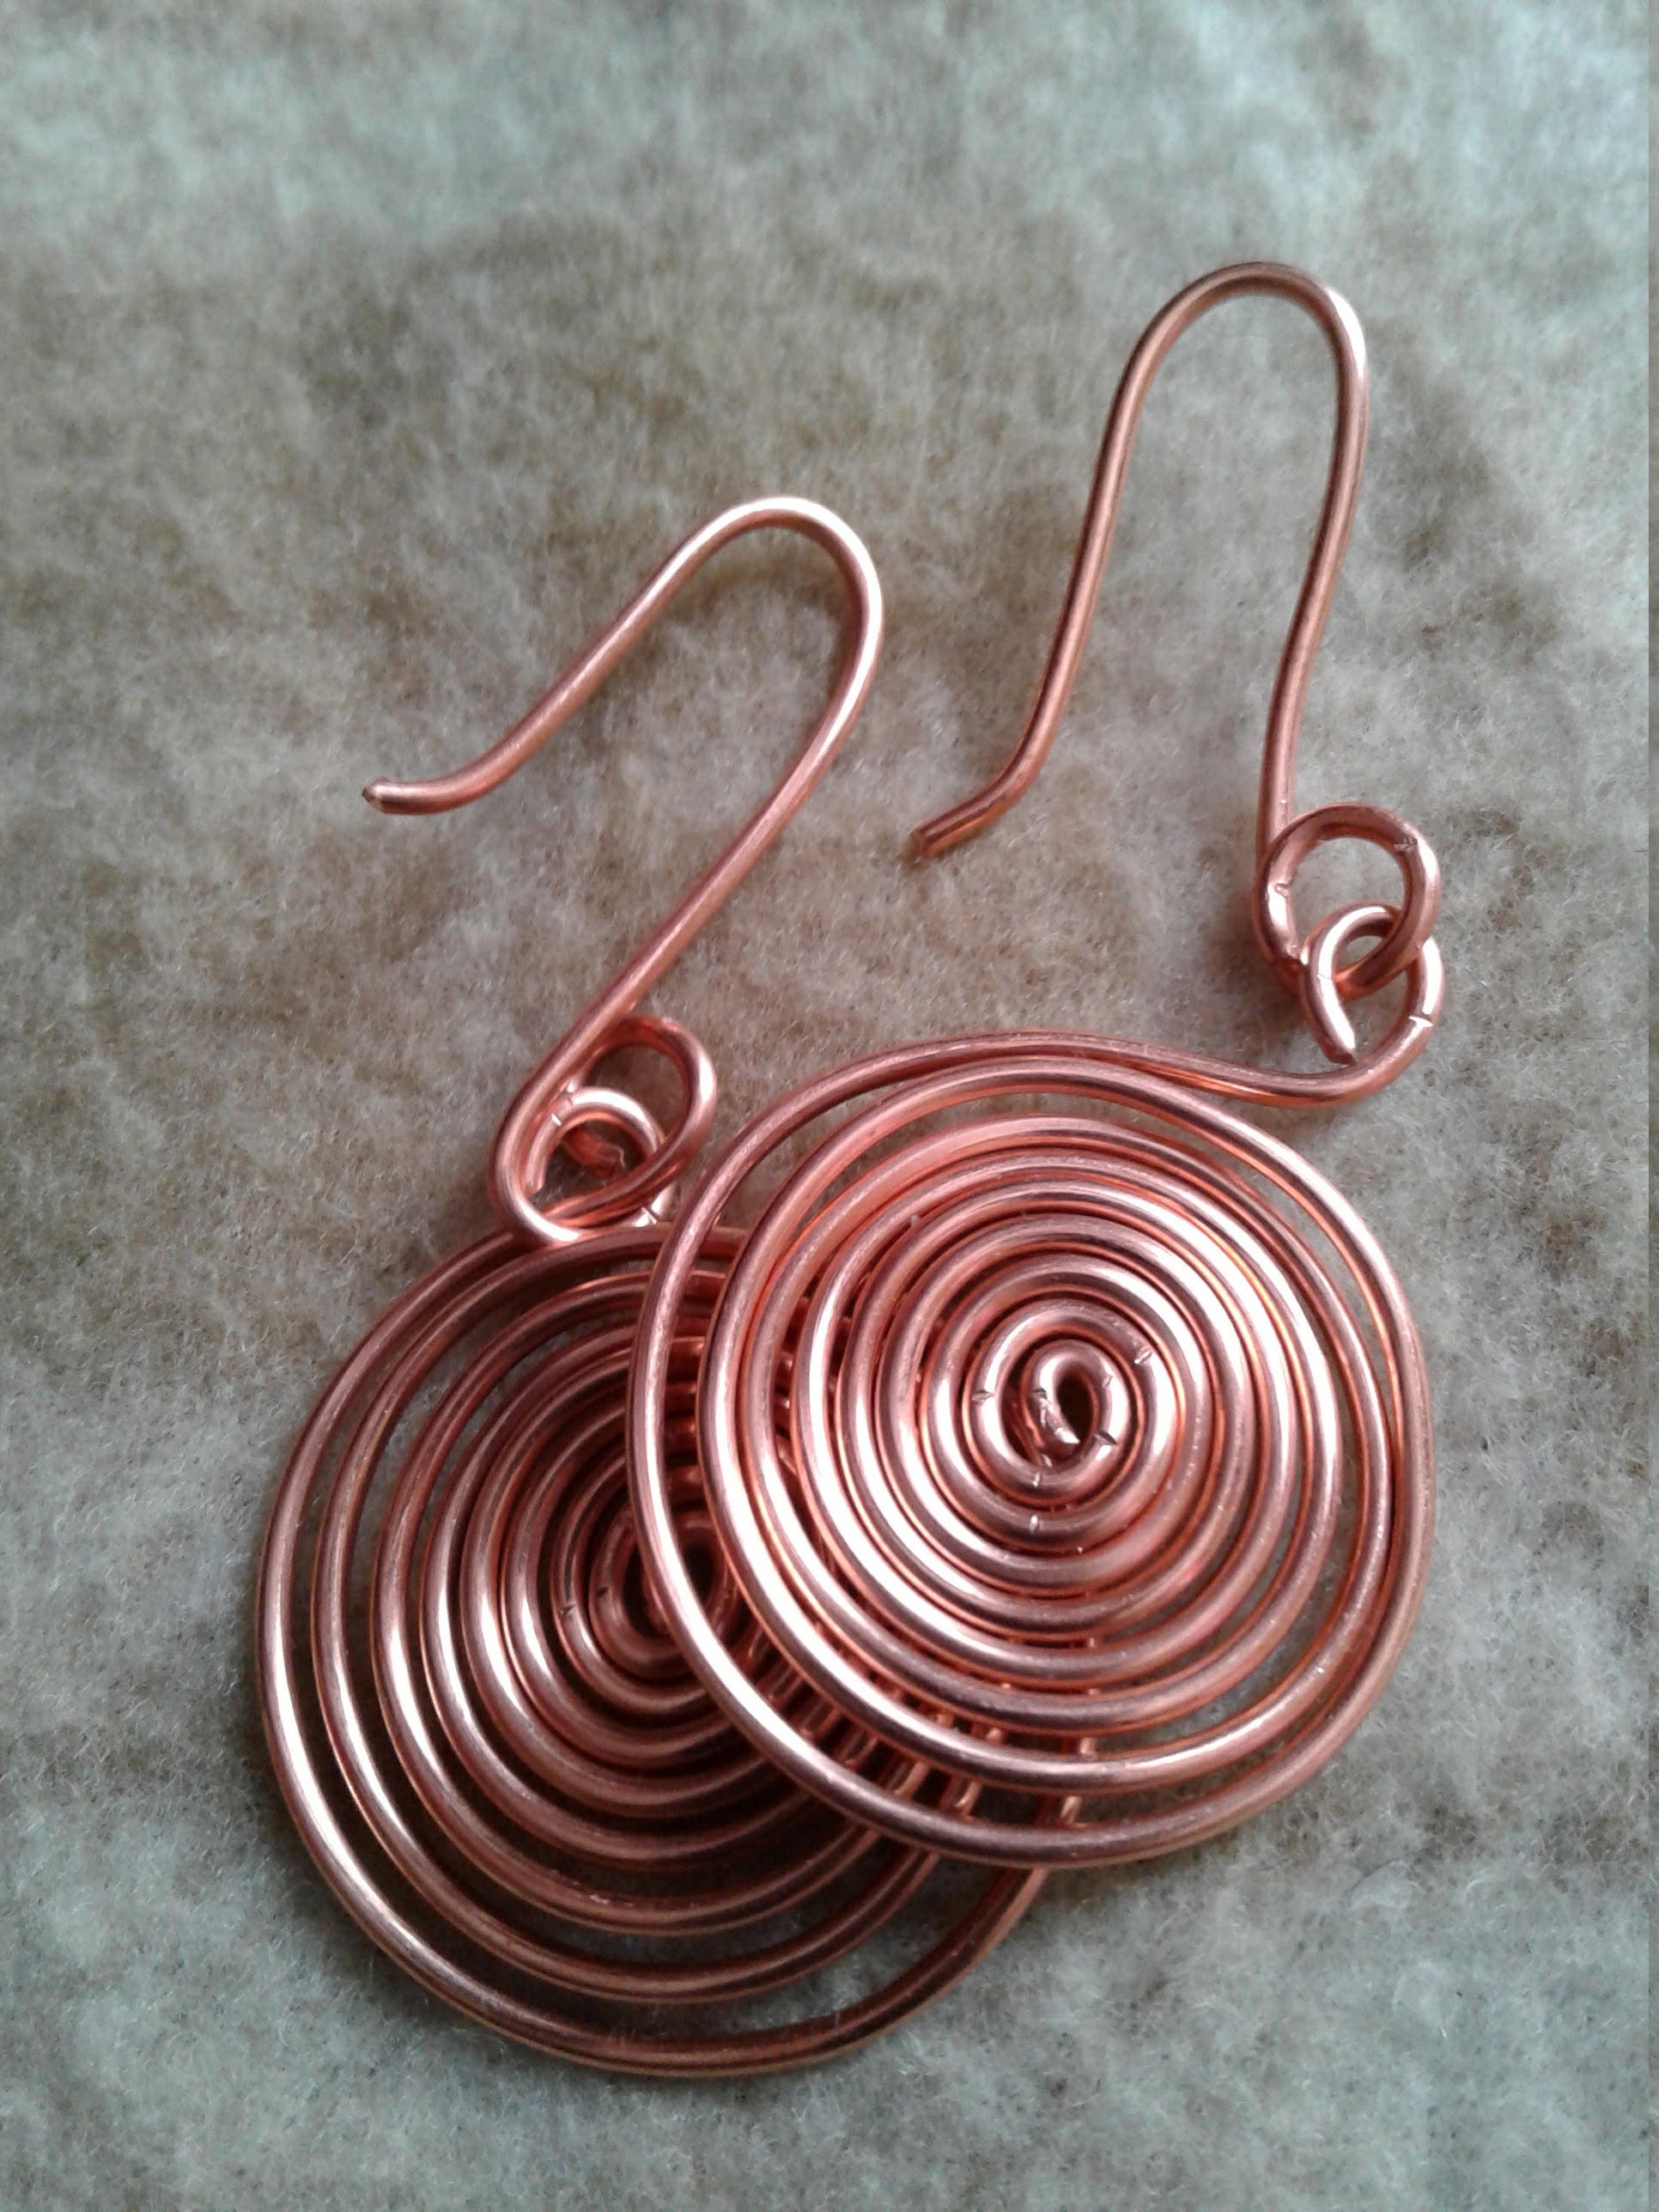 Aokarry Copper Earring for Women Zircon Rose Spiral 